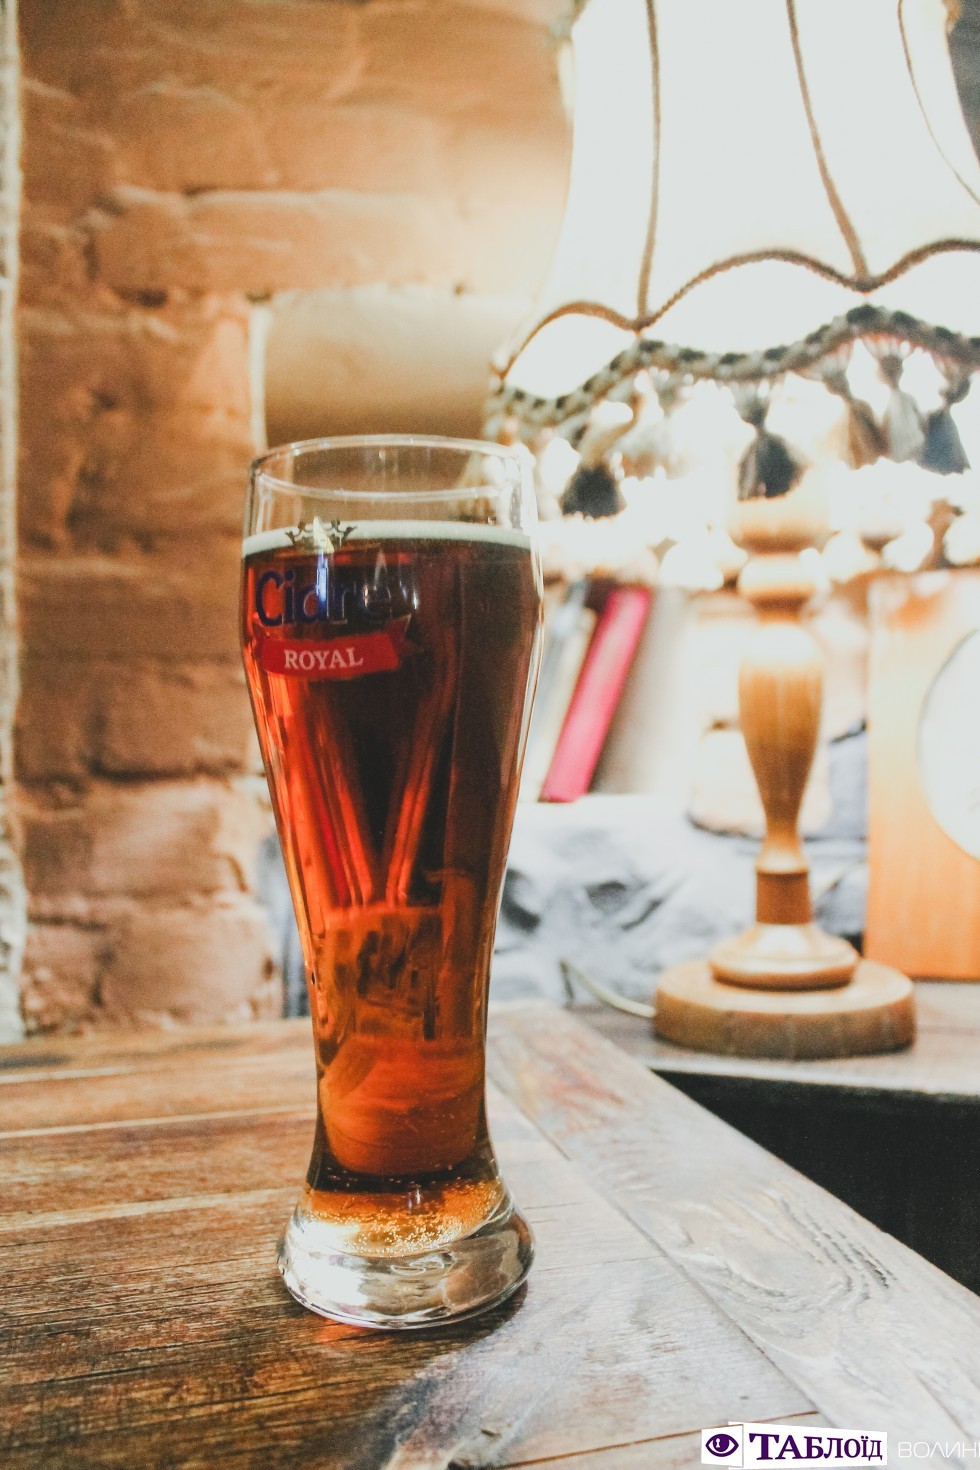 Спробувати яскраві новинки пива та елю можна за адресою проспект Волі, 15. Надмірне споживання алкоголю шкідливе для вашого здоров'я.